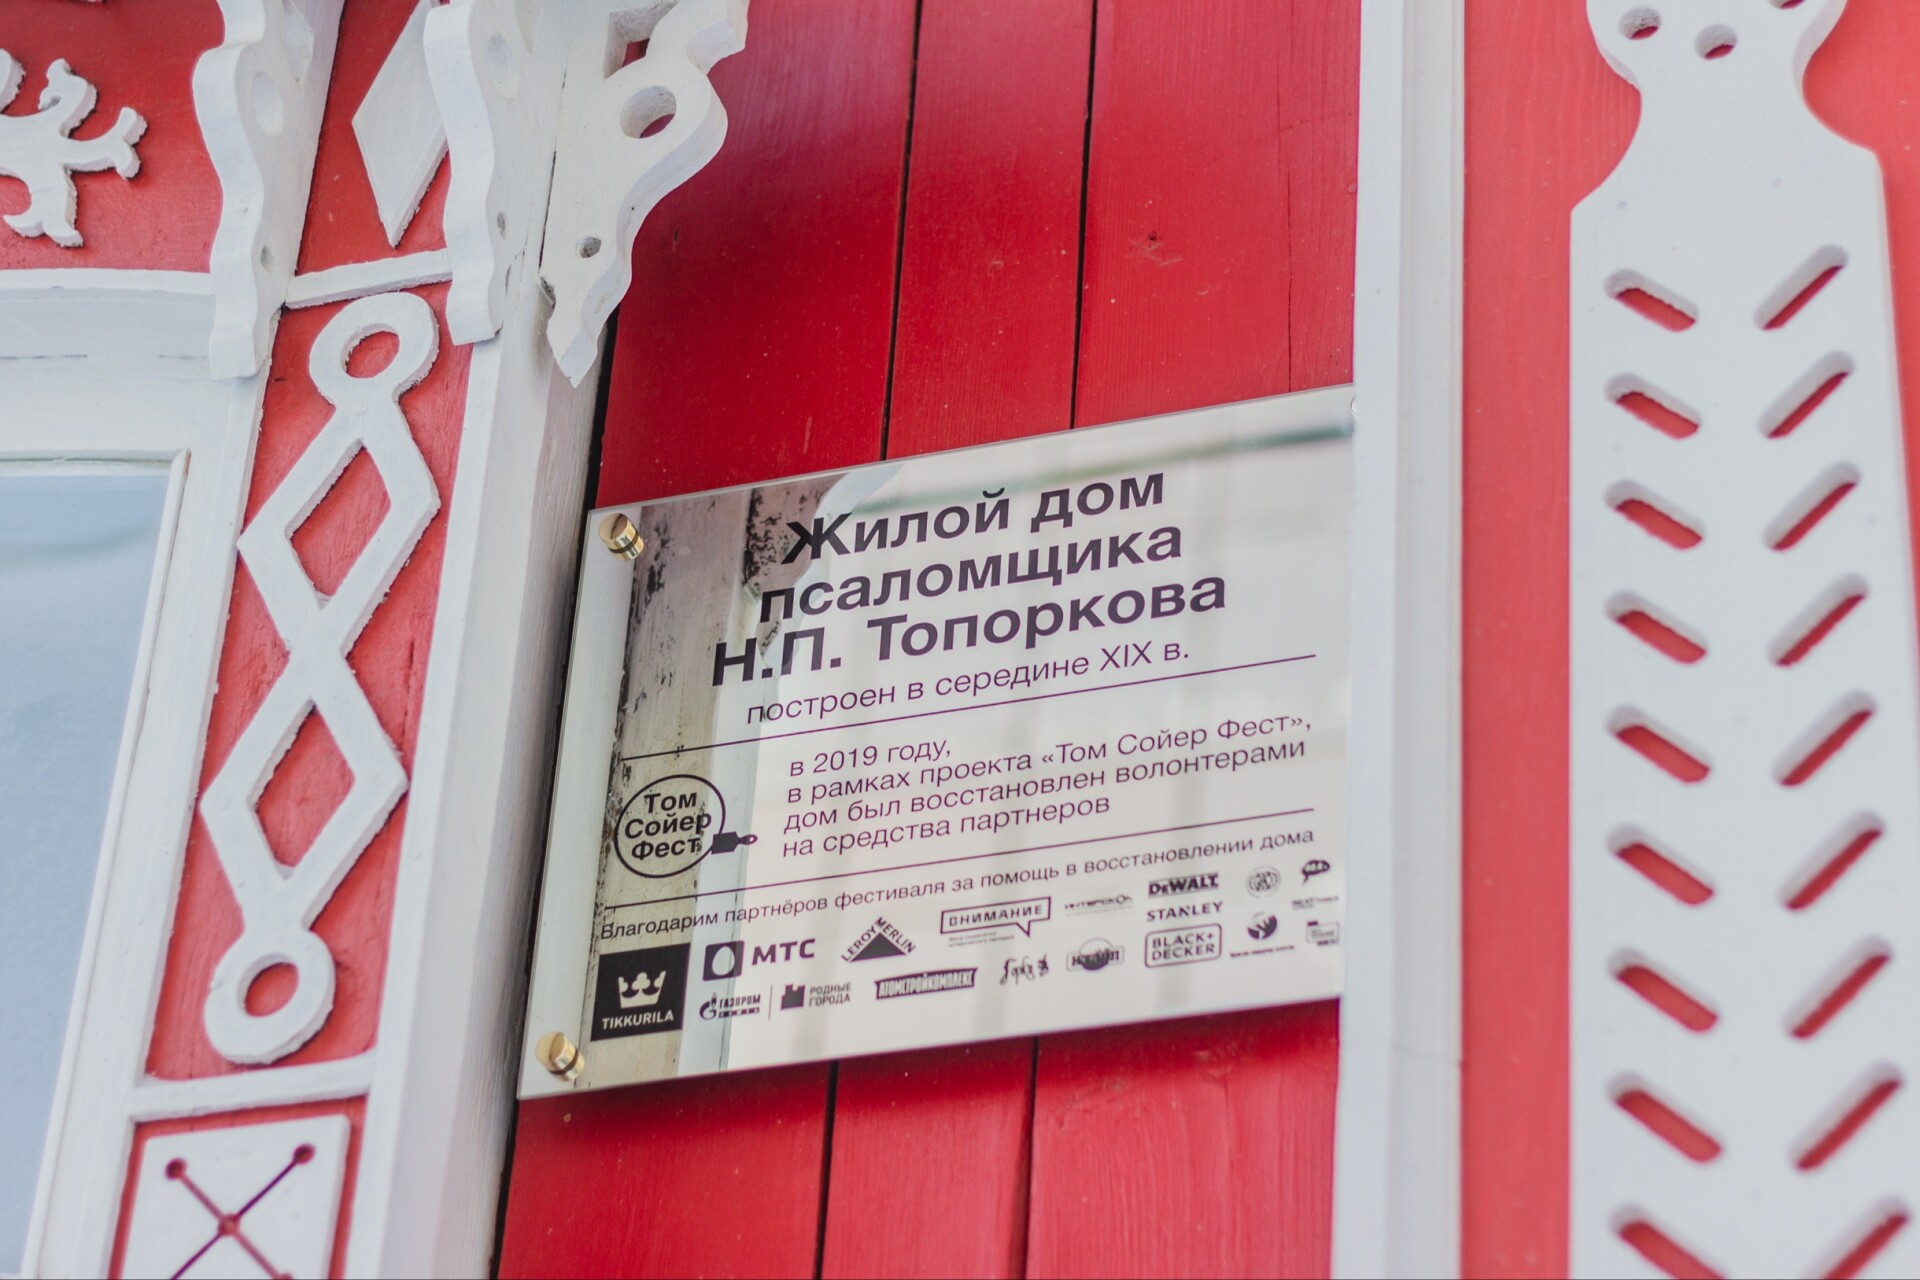 Отремонтированный дом XIX века пытались снести в Екатеринбурге